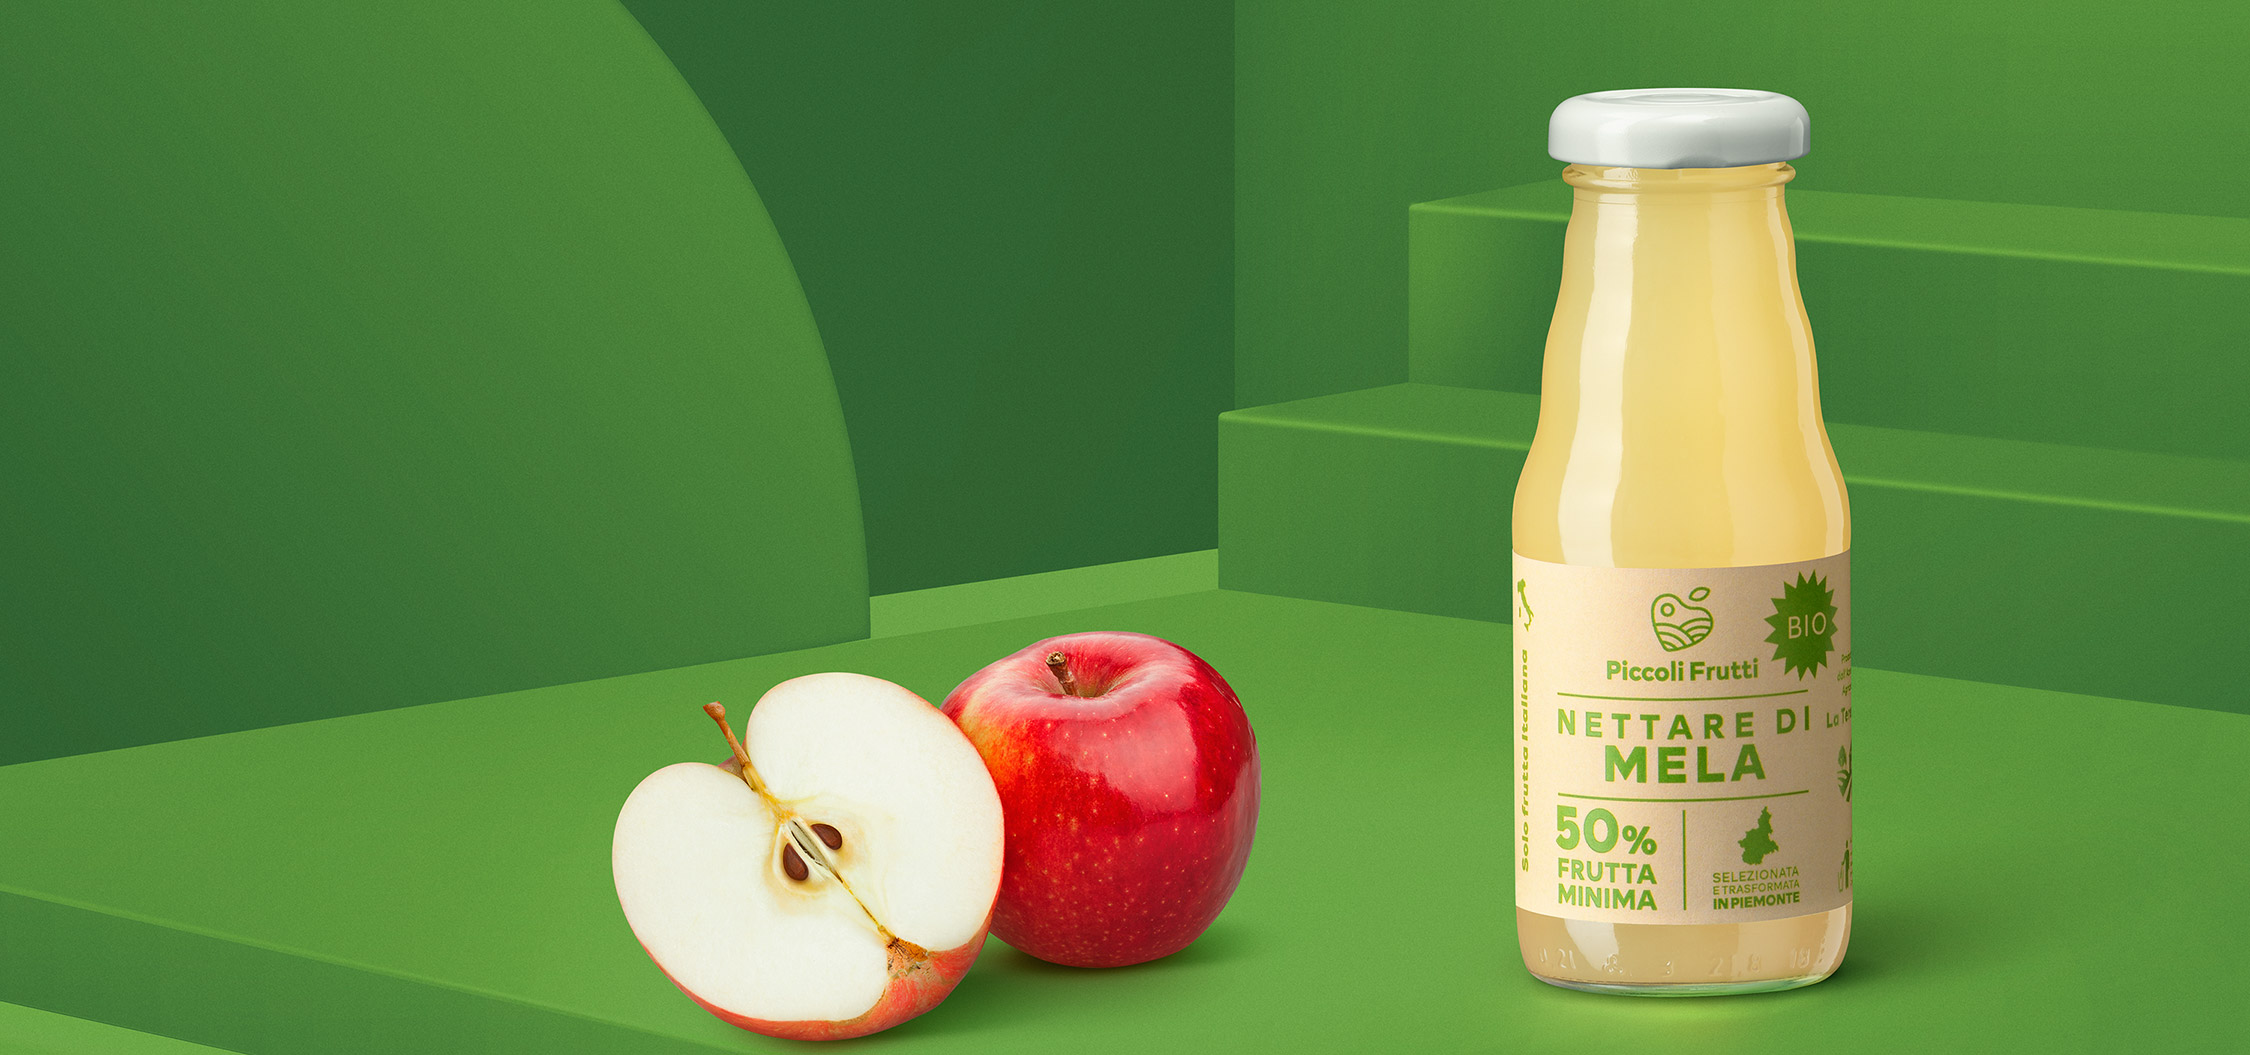 Produzione e lavorazione frutta biologica - Nettare di mela